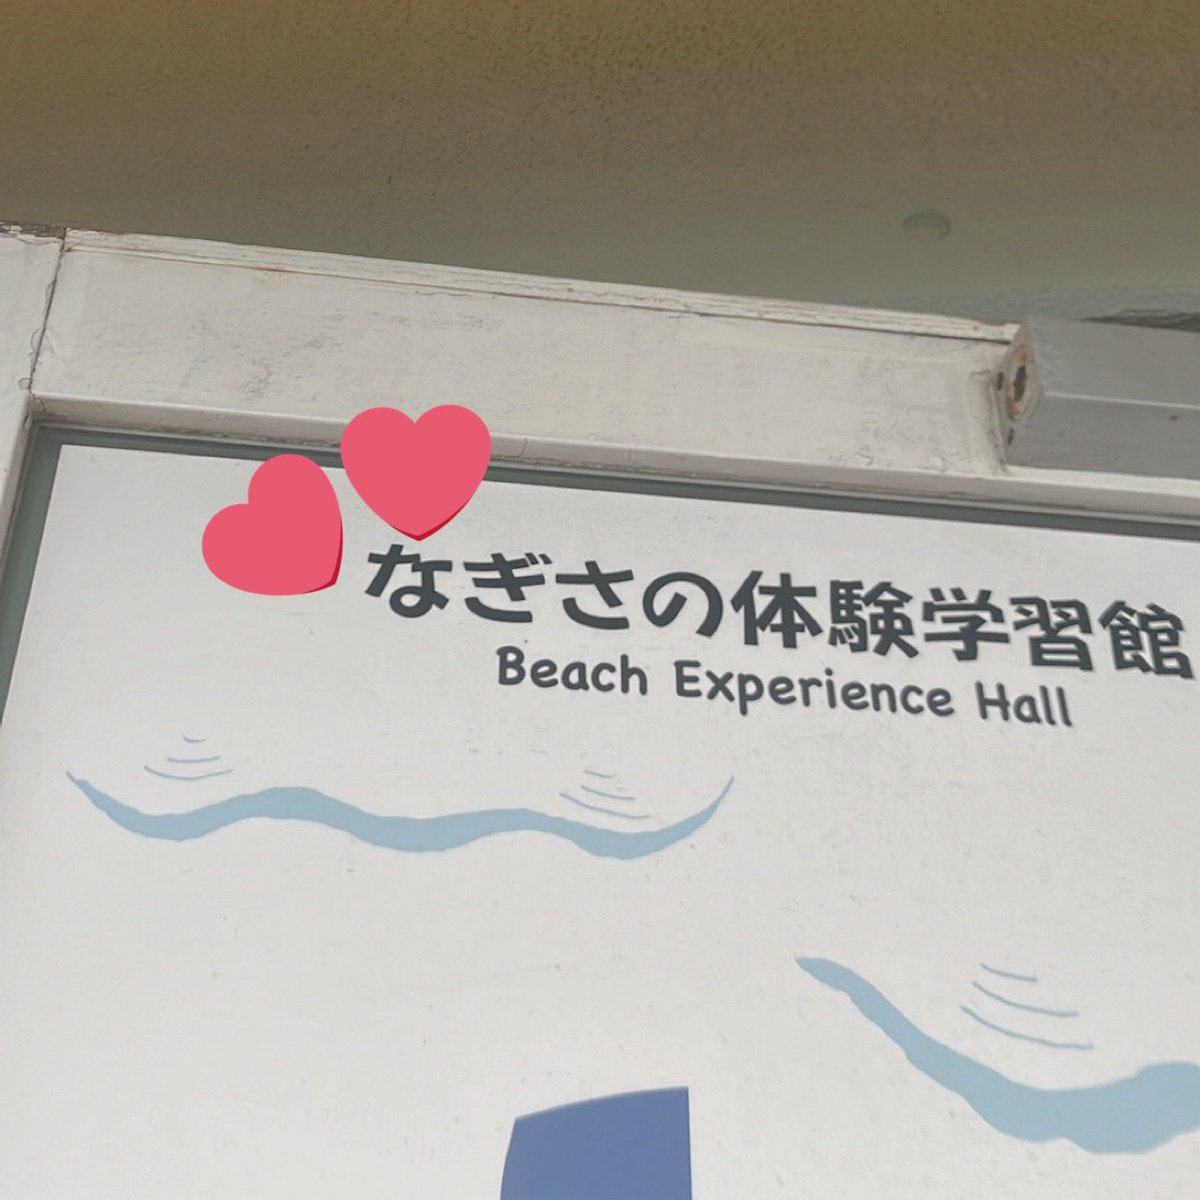 齊藤なぎさちゃんと吉川愛ちゃんがディズニーに行ってる間、わたしは新江ノ島水族館に行っていました #届いてなーたん